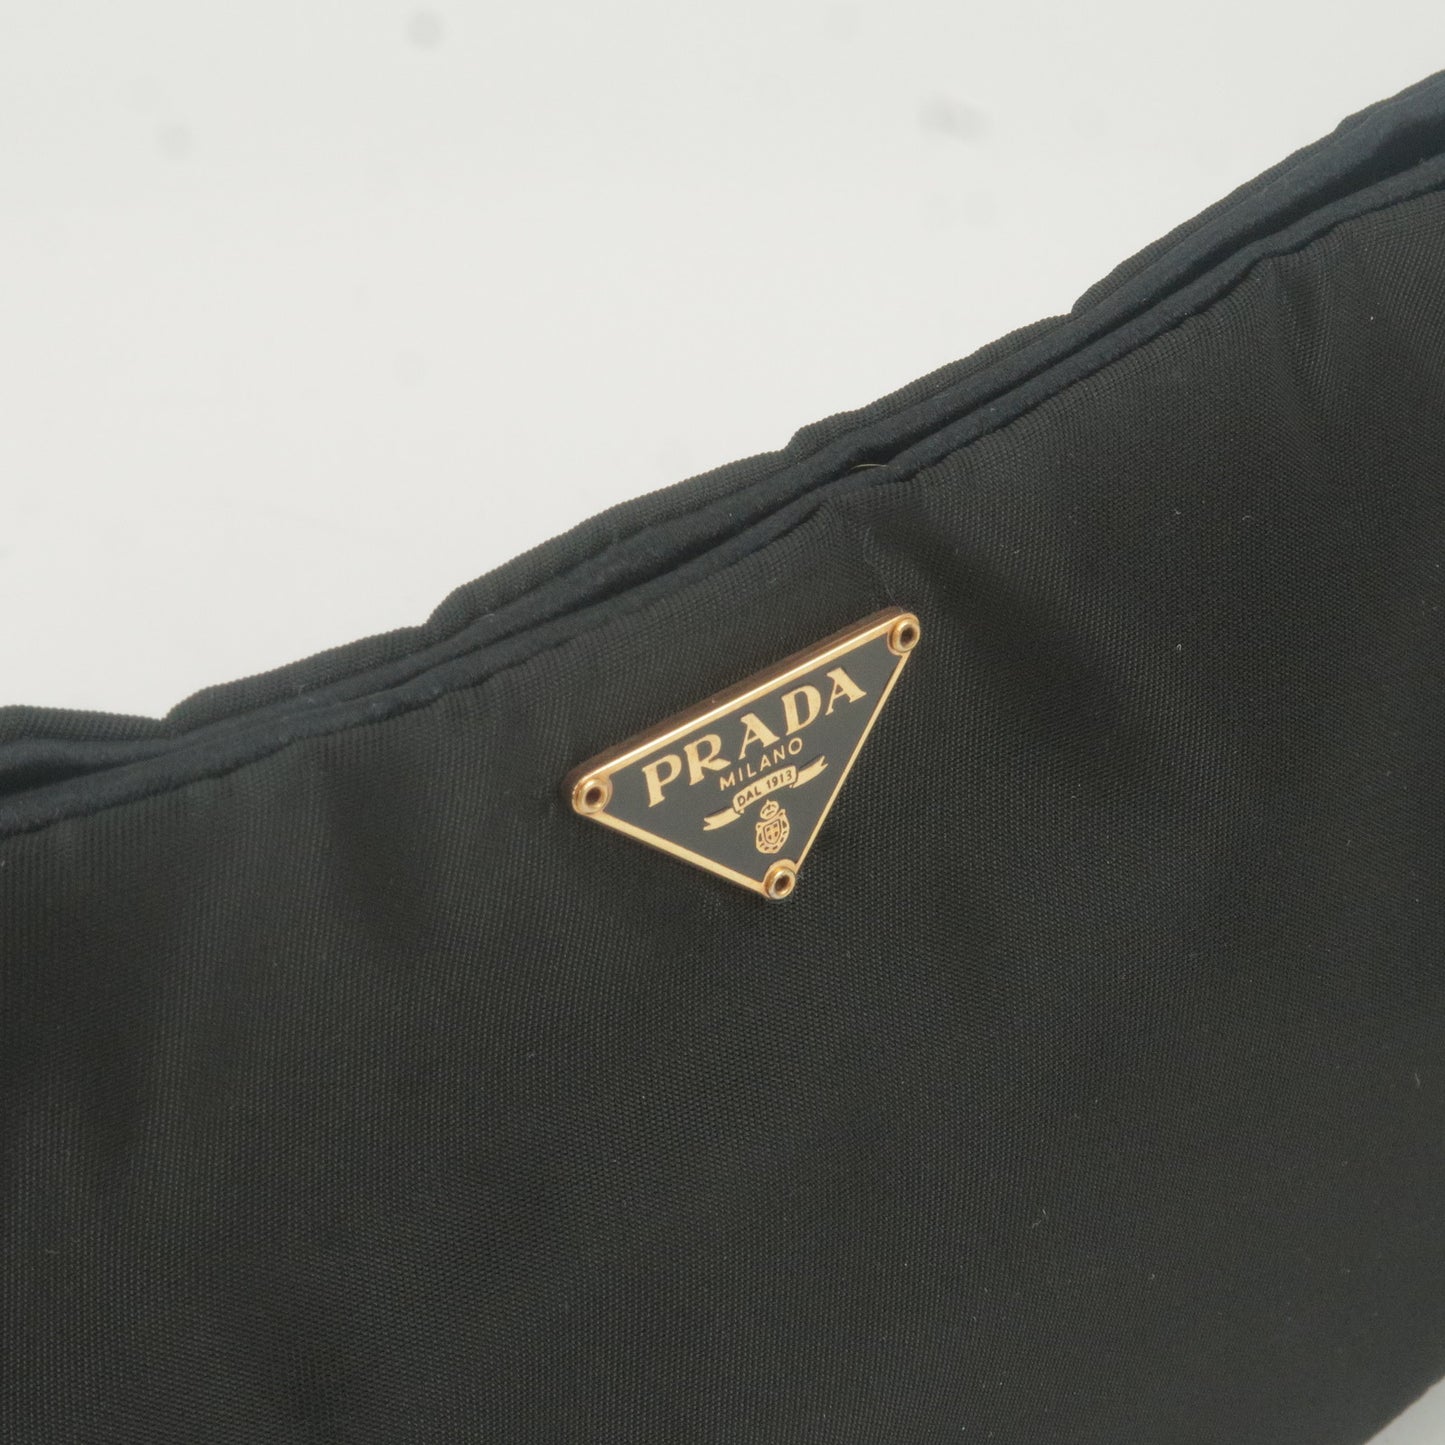 PRADA Nylon Chain Shoulder Bag Rose Gold NERO Black 1BB903